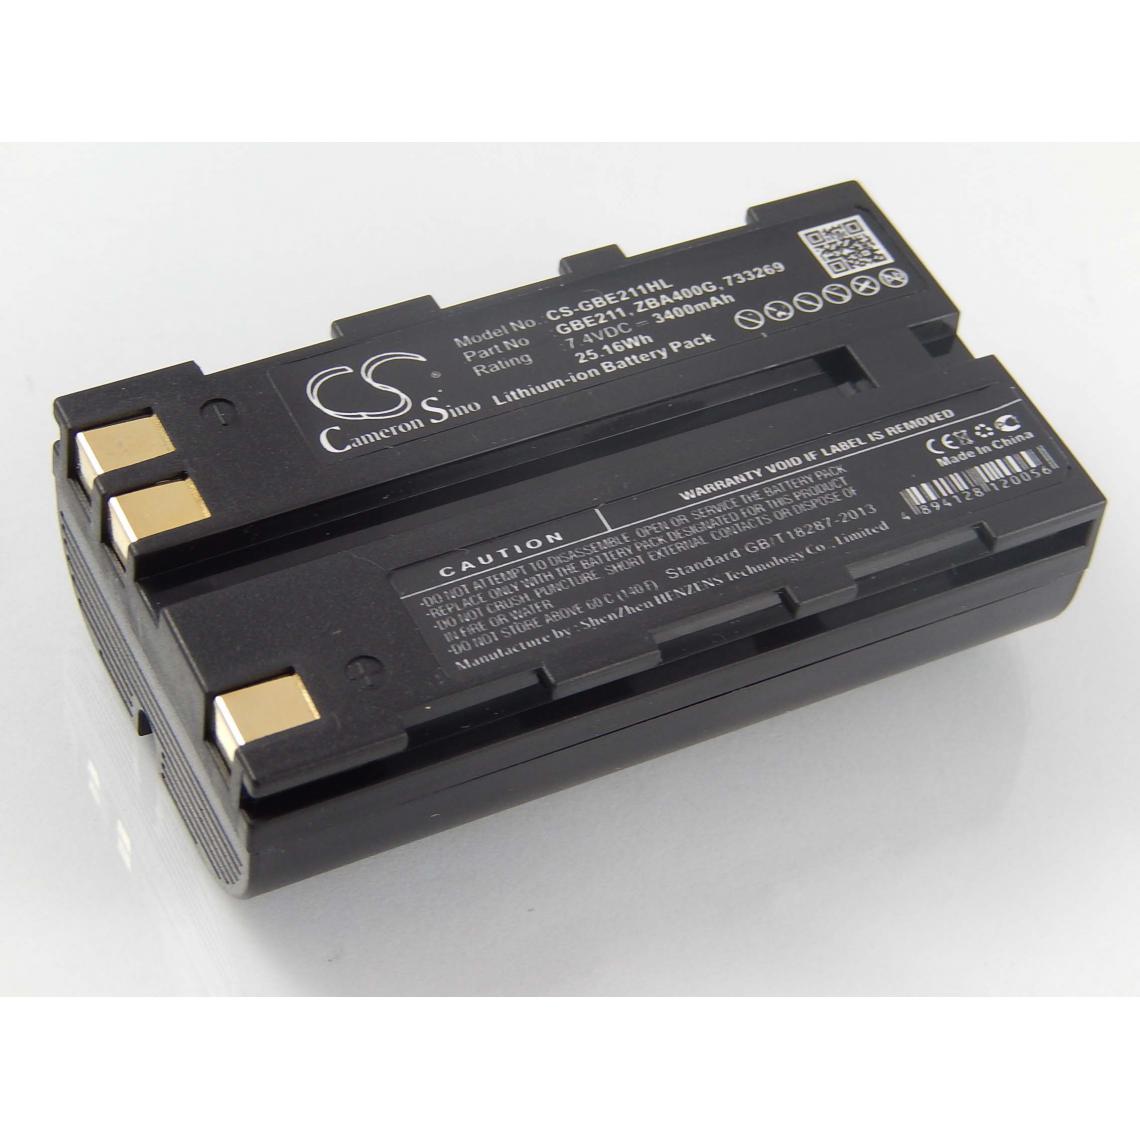 Vhbw - vhbw Batterie compatible avec Leica GS20, RCS1100, RX1200, RX900 dispositif de mesure laser, outil de mesure (3400mAh, 7,4V, Li-ion) - Piles rechargeables